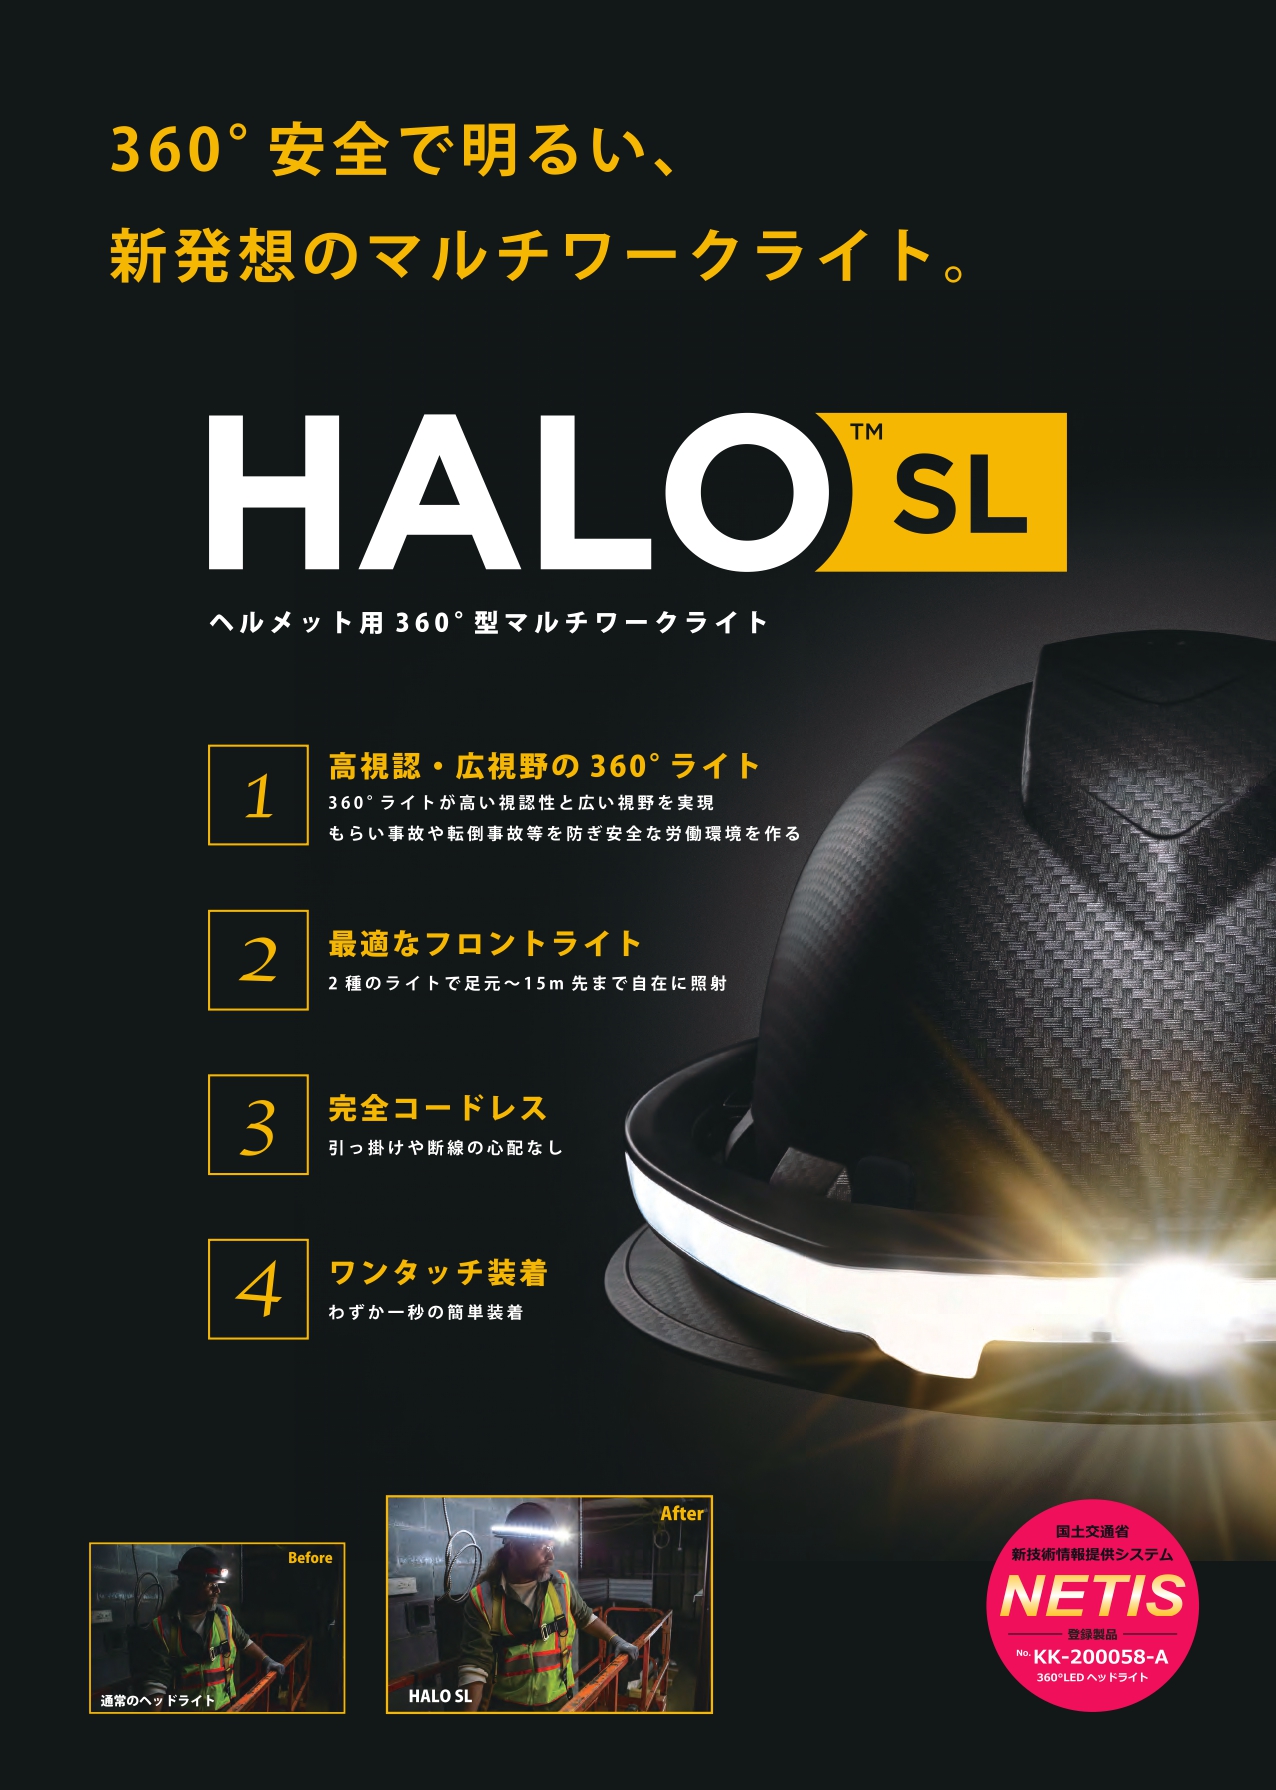 【10台セット】360°LEDヘッドライト 全周型LEDヘッドライト HALO SL ヘイロー SL スタンダードセット ヘルメット用360°型 マルチワークライト タスクライト スポットライト